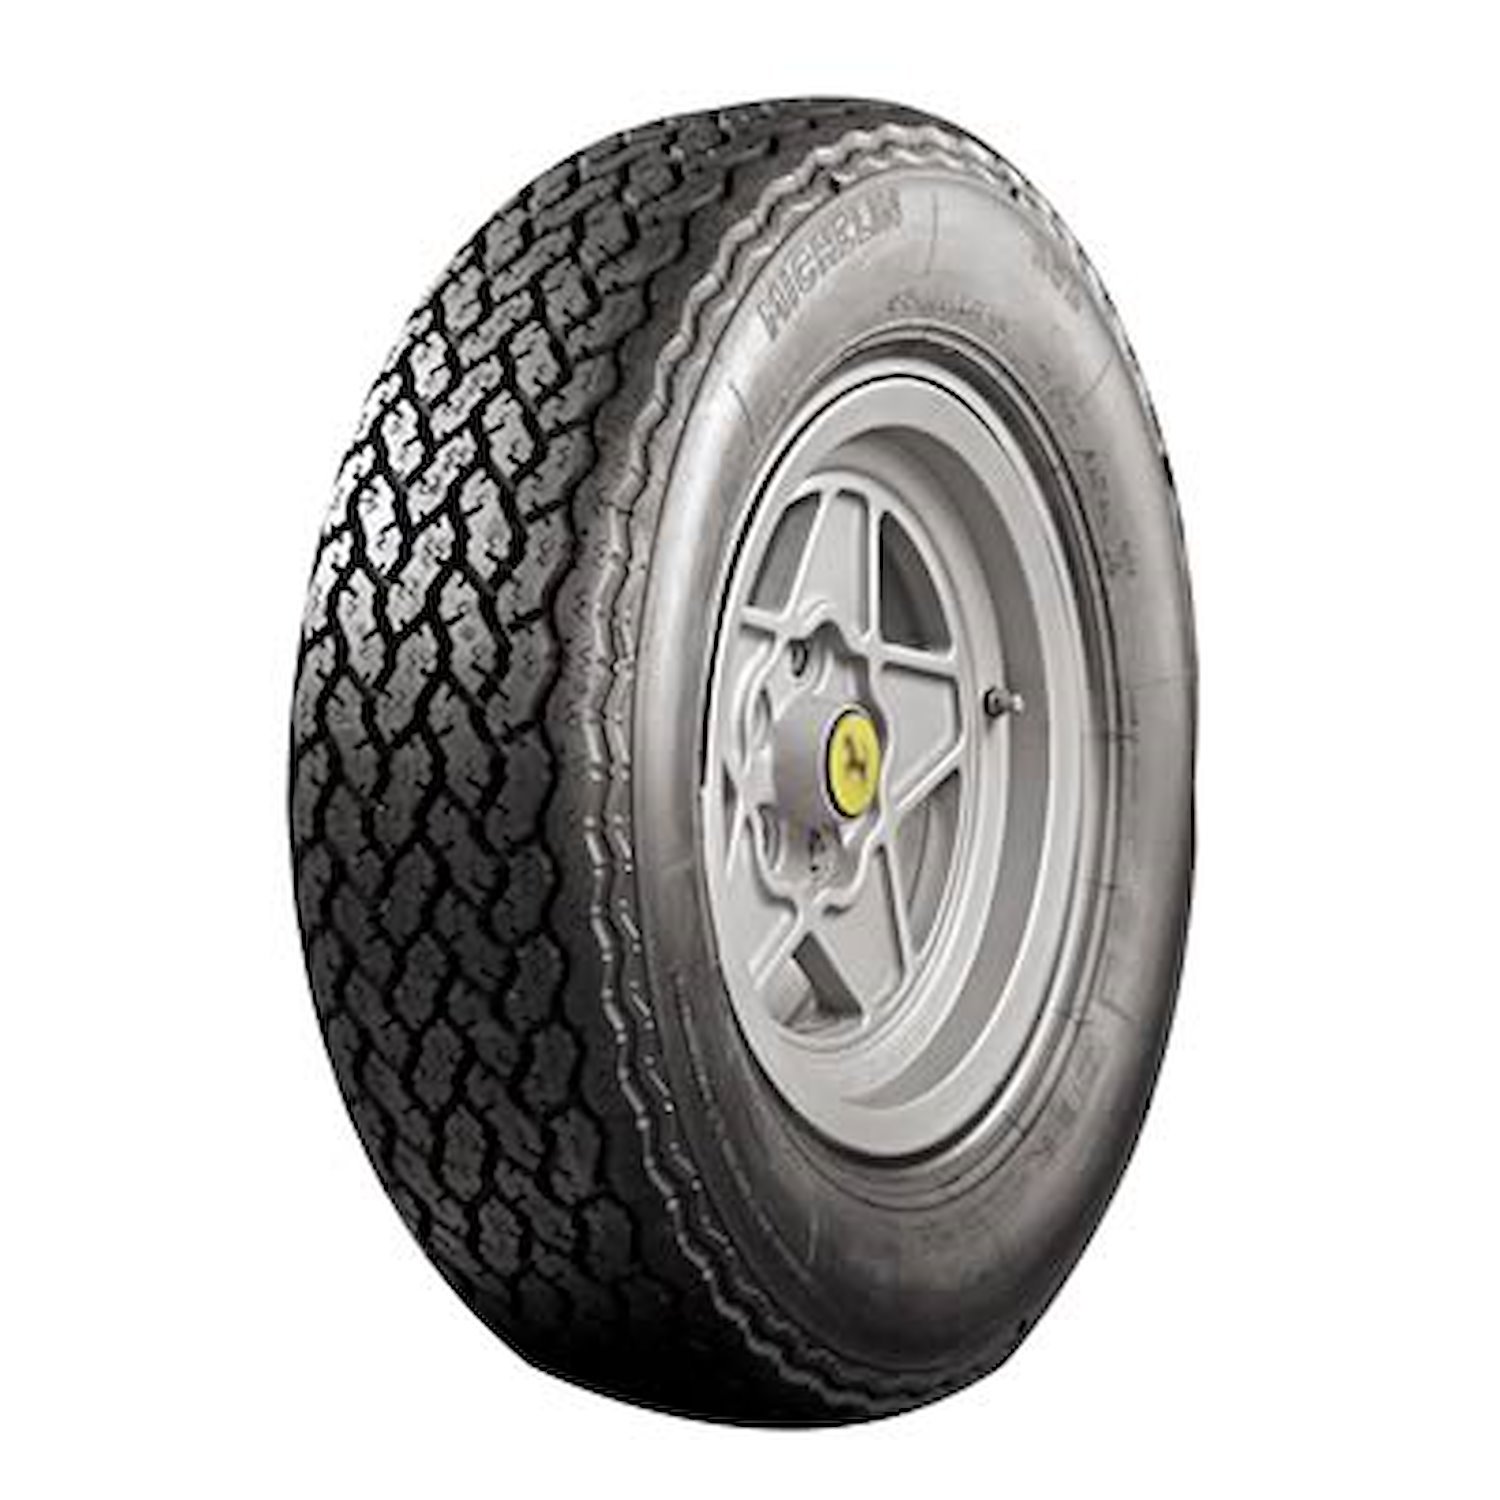 57977 Tire, Michelin XWX, 215/70VR15 90W